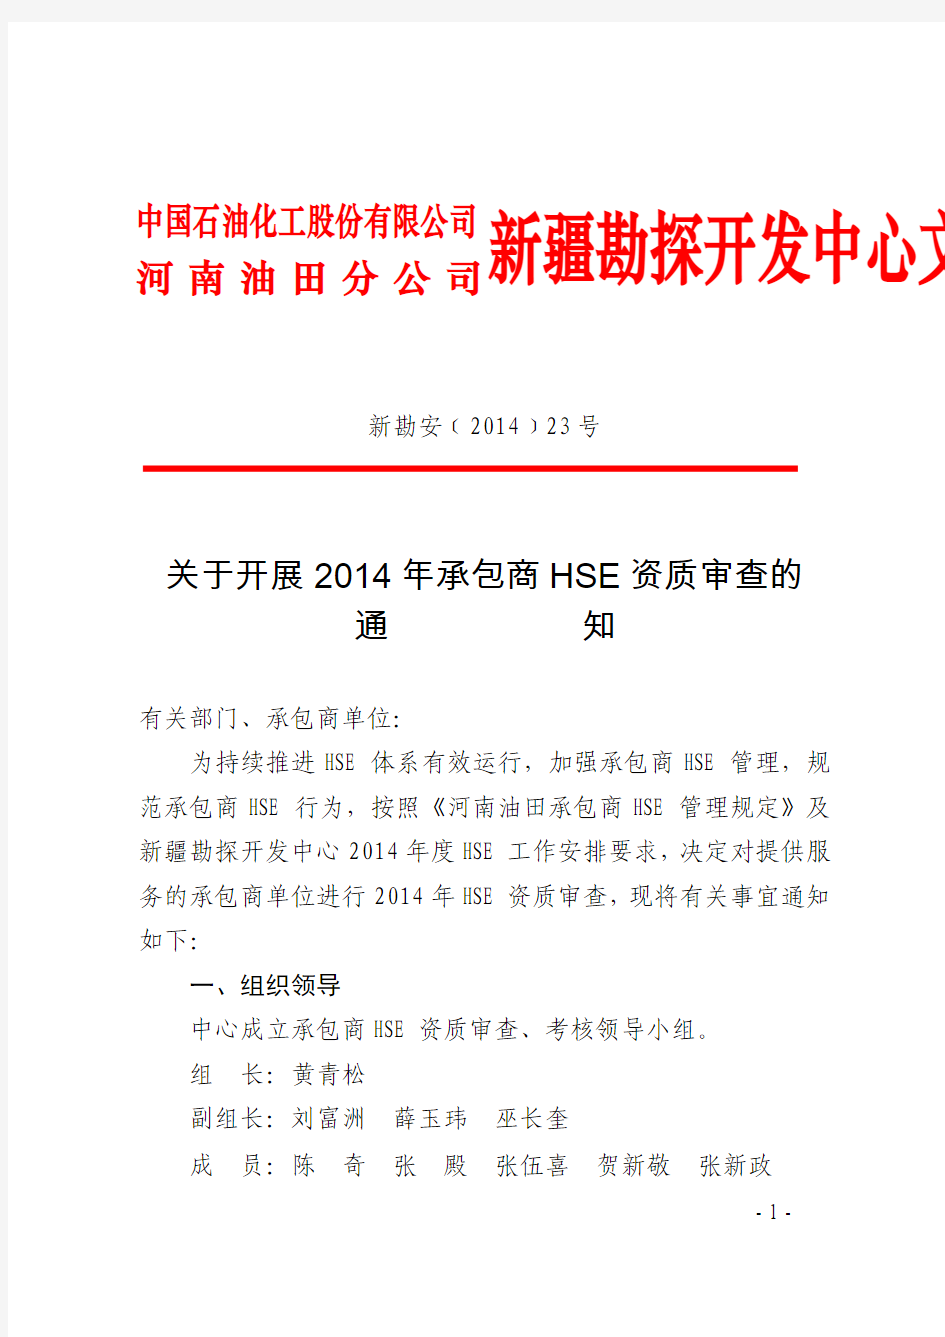 正文：关于开展2014年承包商HSE资质审查的通知